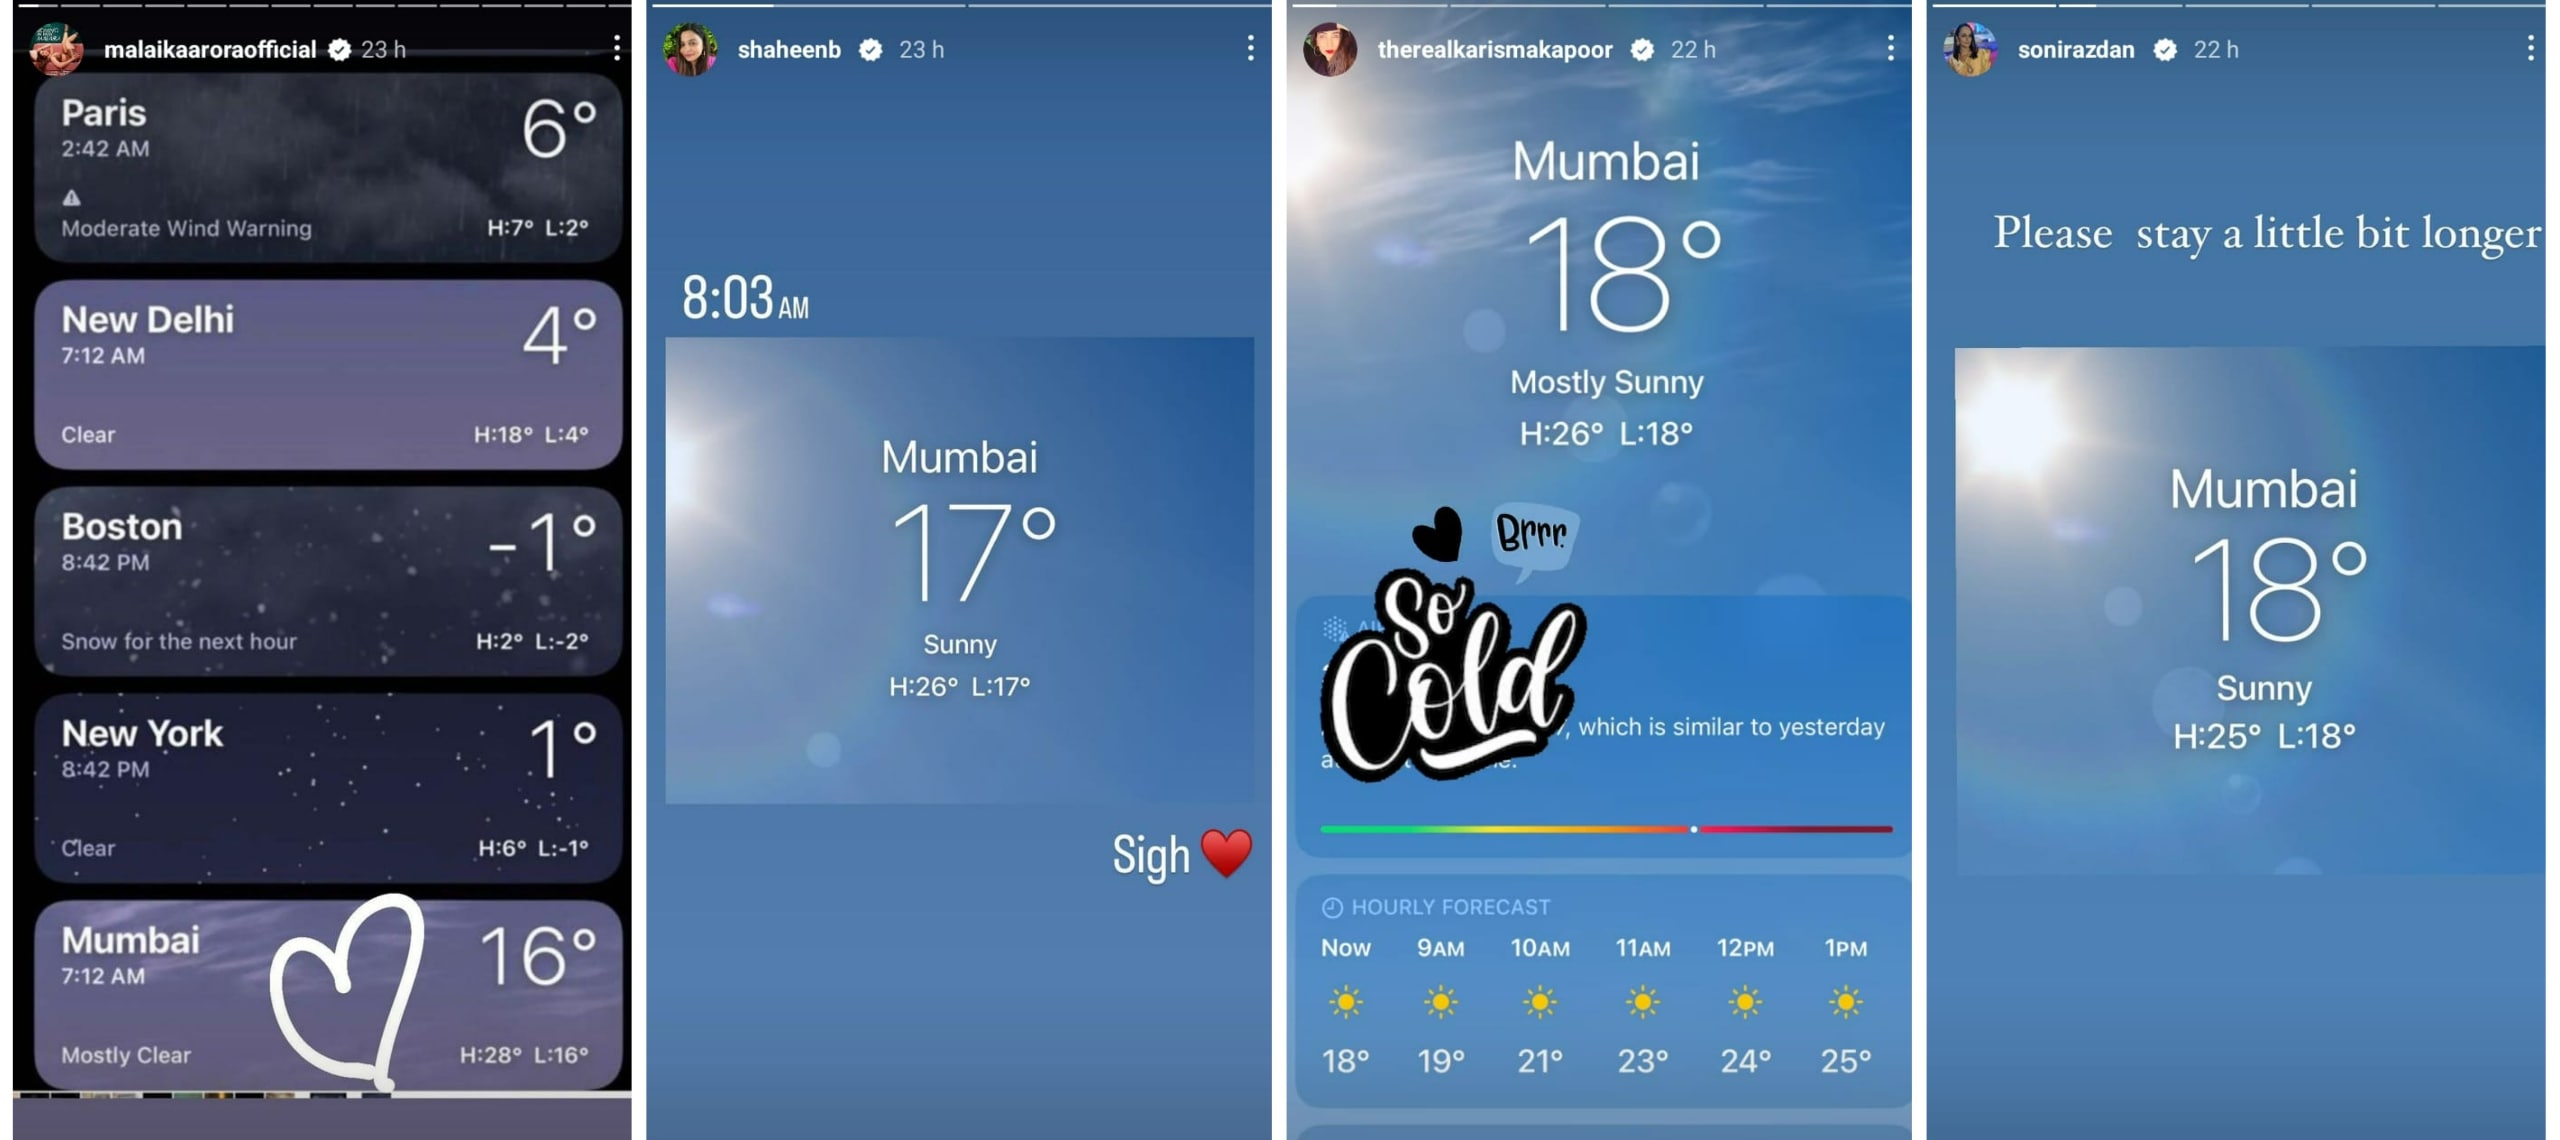 Malaika Arora, Shaheen Bhatt, Karisma Kapoor and Soni Razdan reacted on Monday temperature in Mumbai.